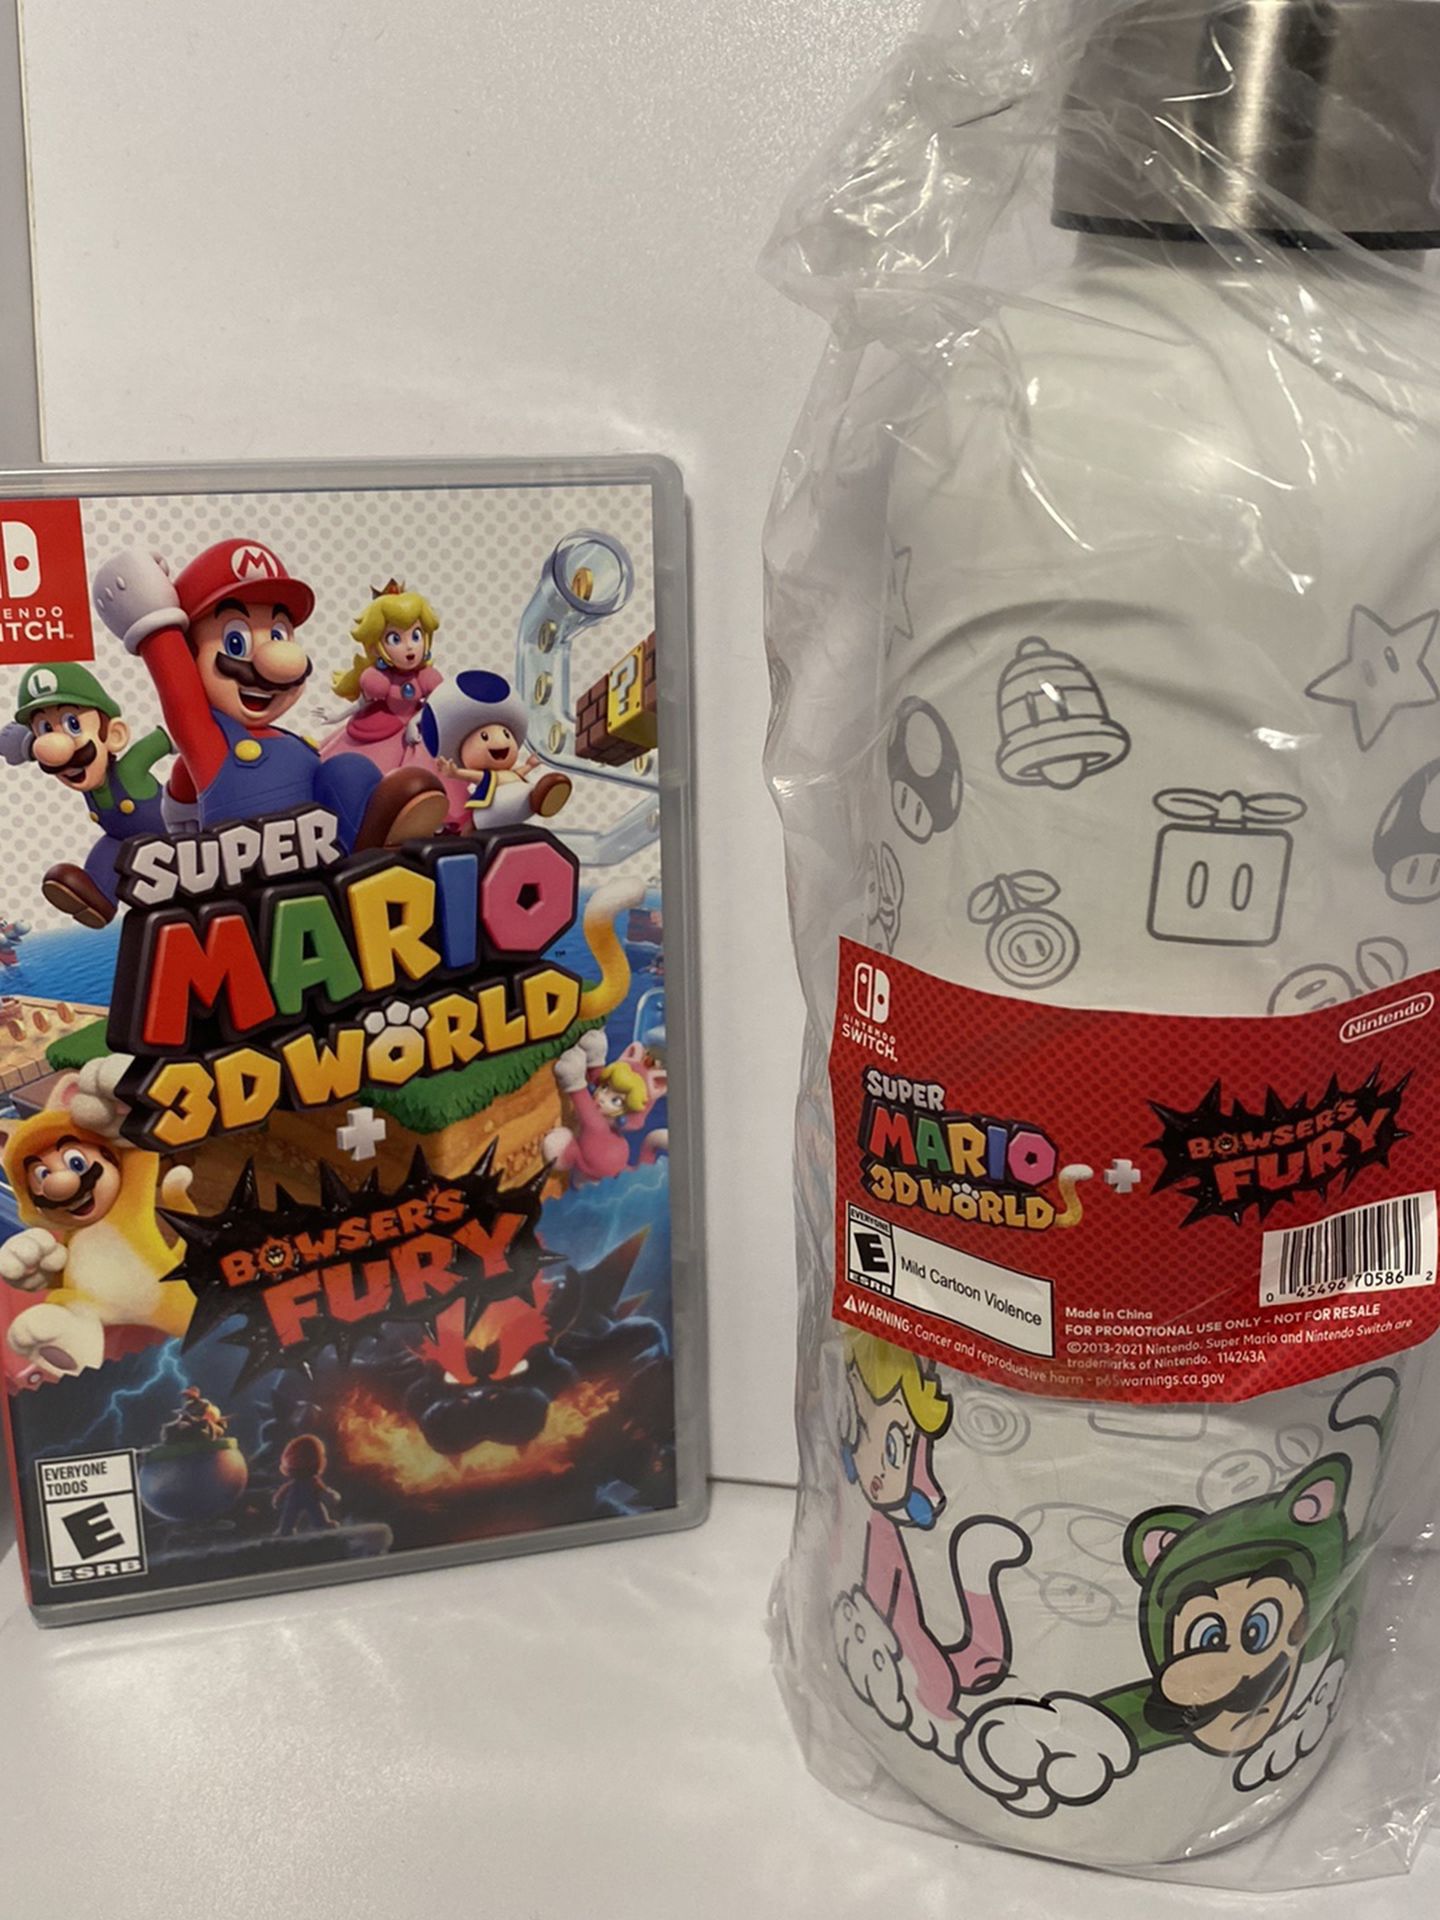 Super Mario 3D World + Boswer’s Fury & water bottle